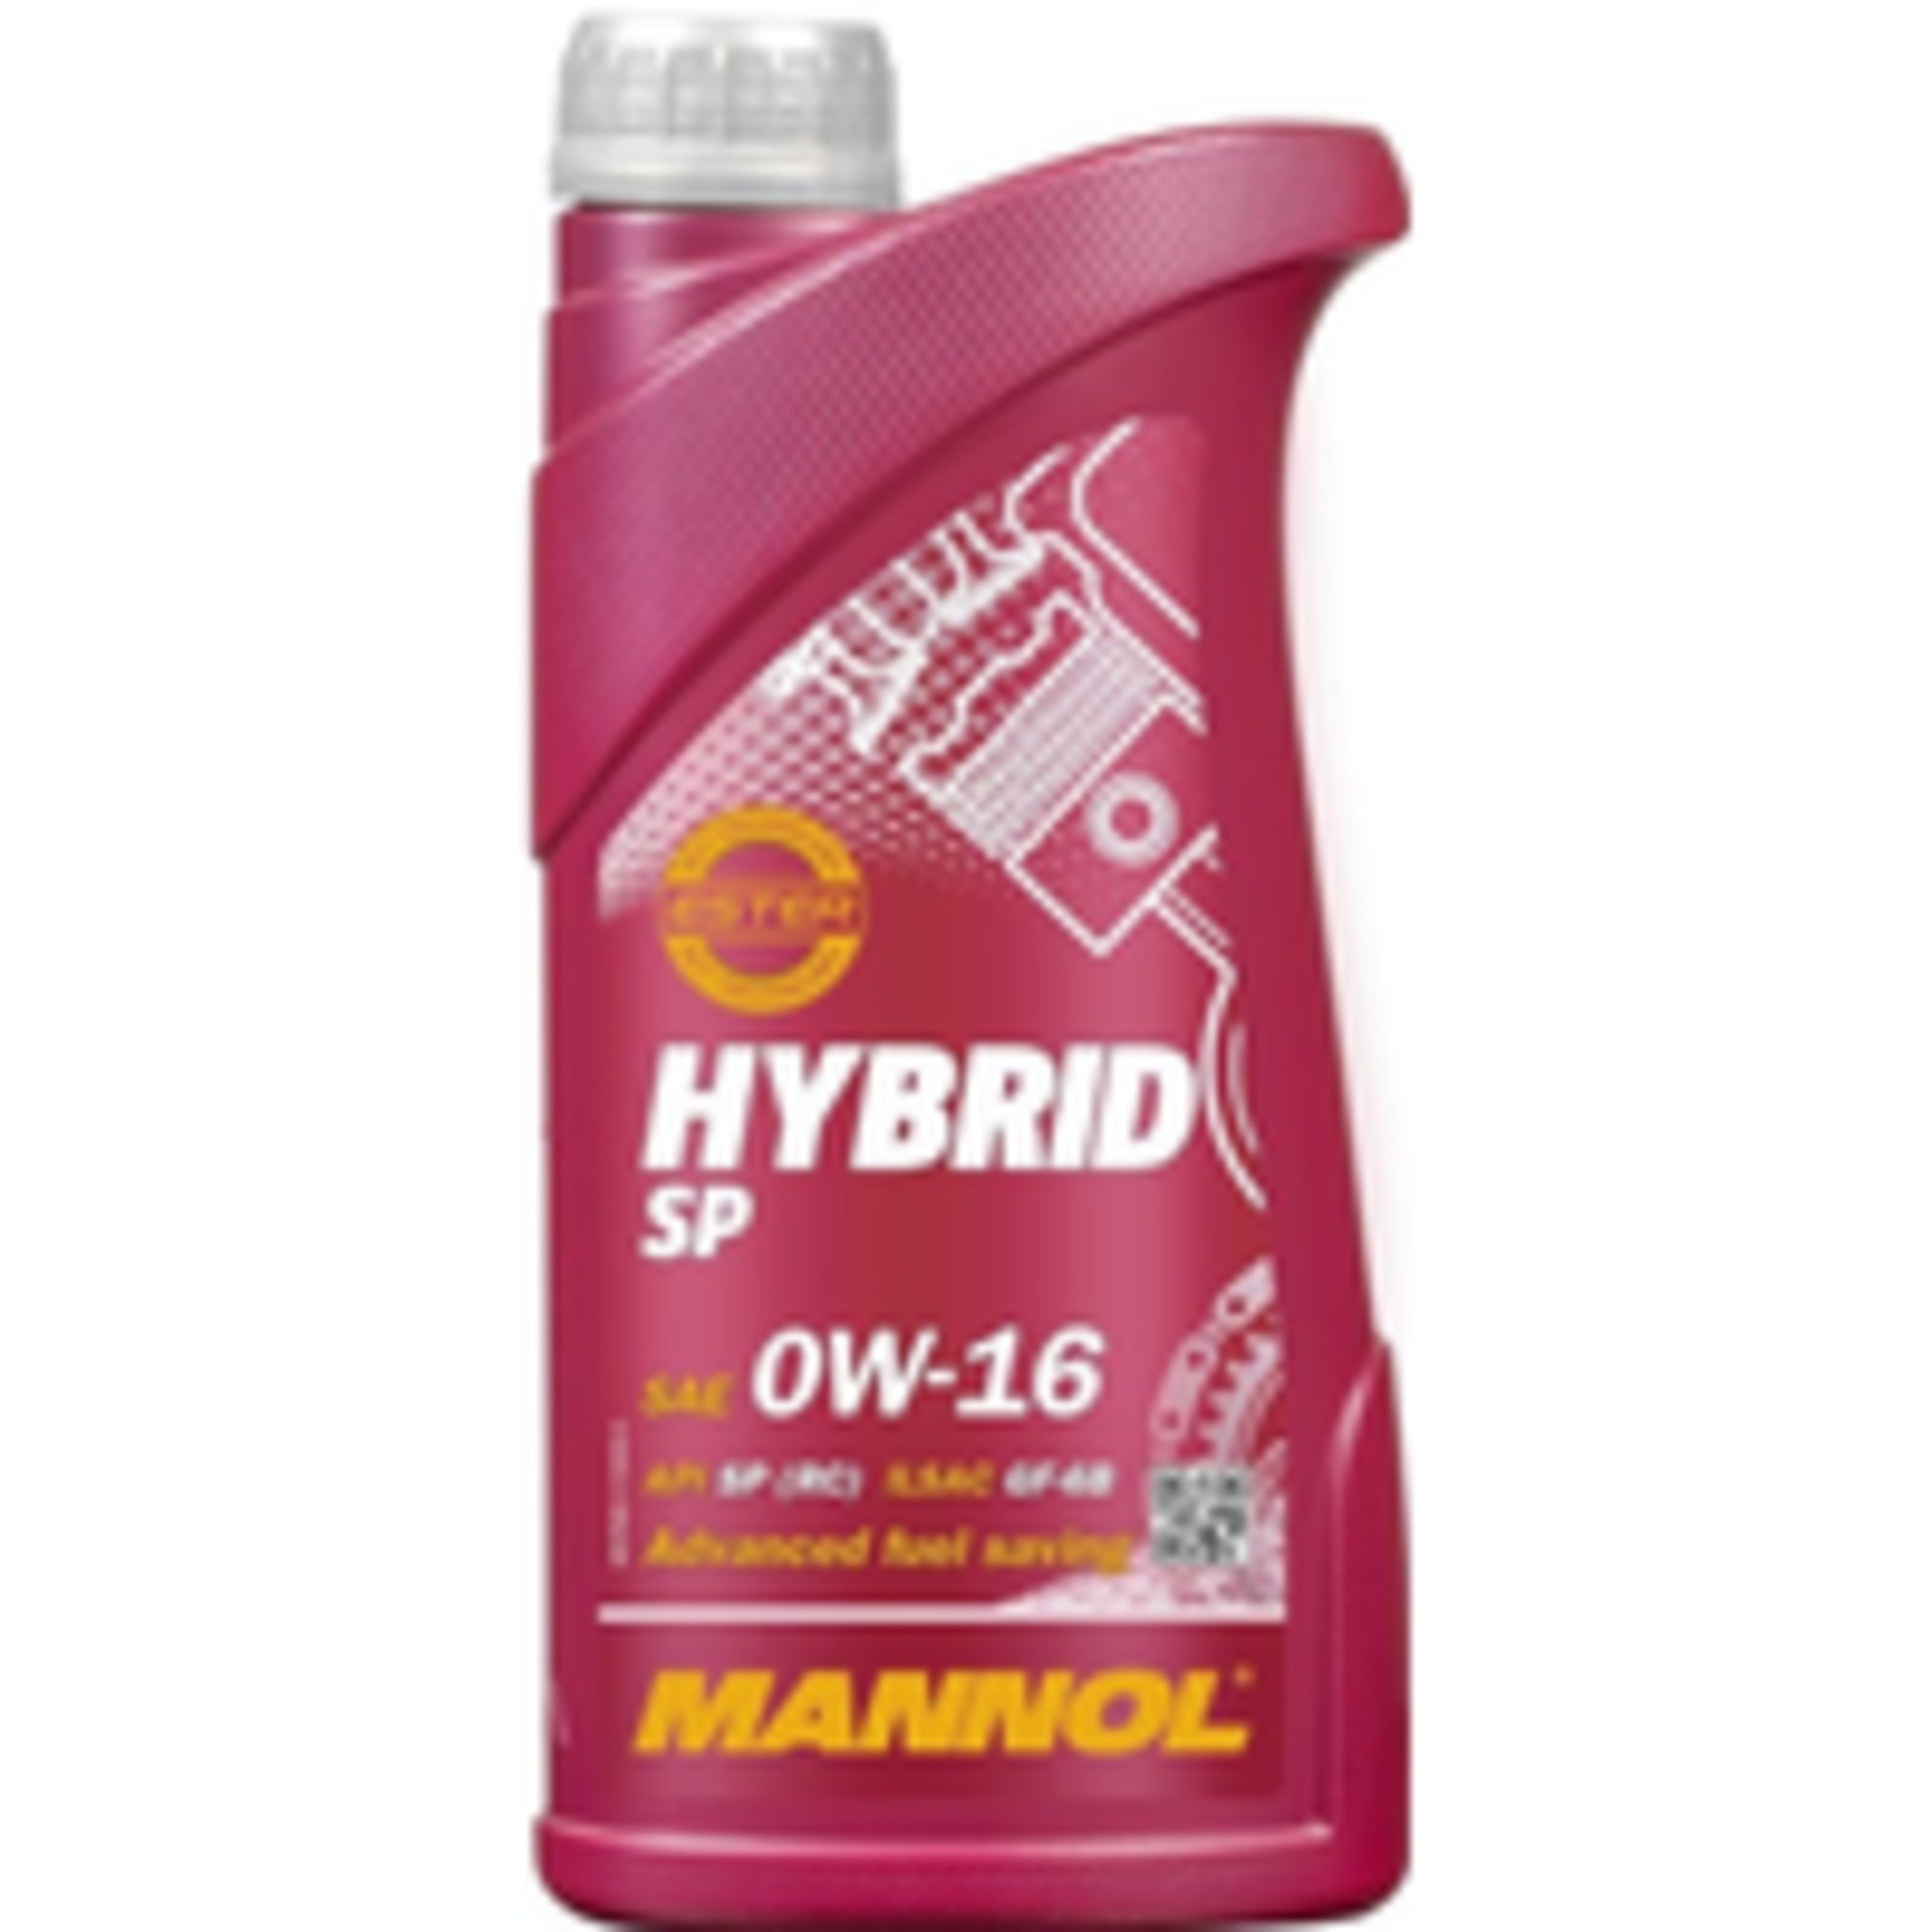 Mannol hybrid sp 0w-16. 1l